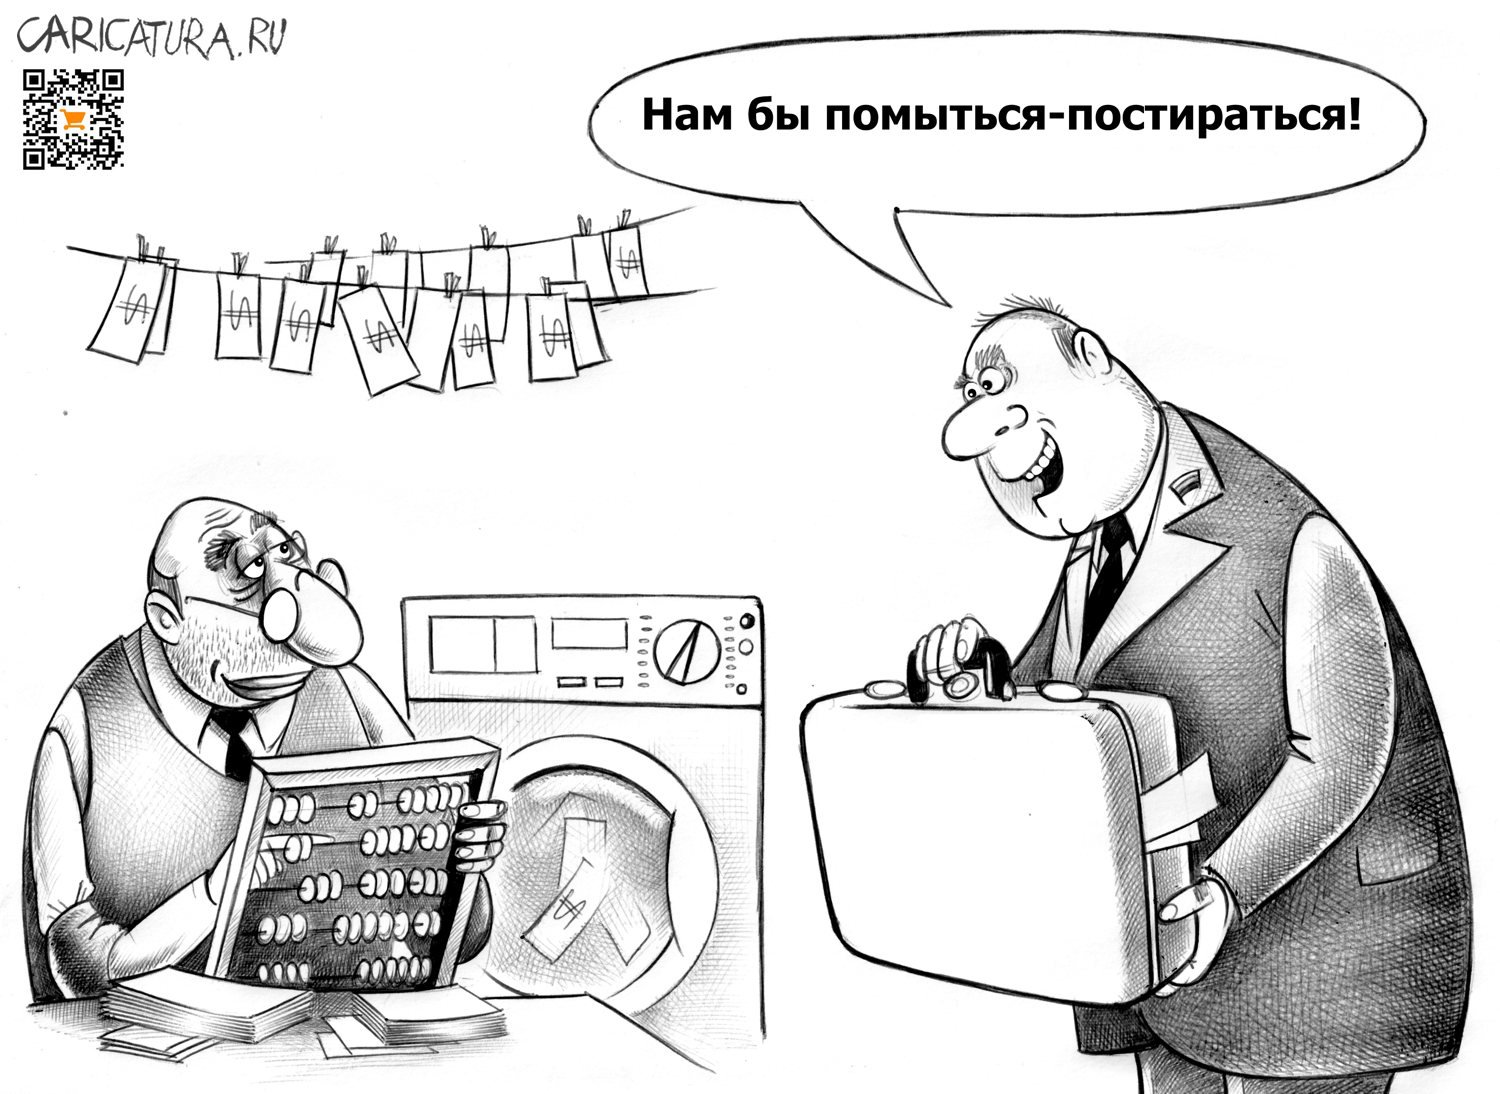 Карикатура "Отмывание", Сергей Корсун